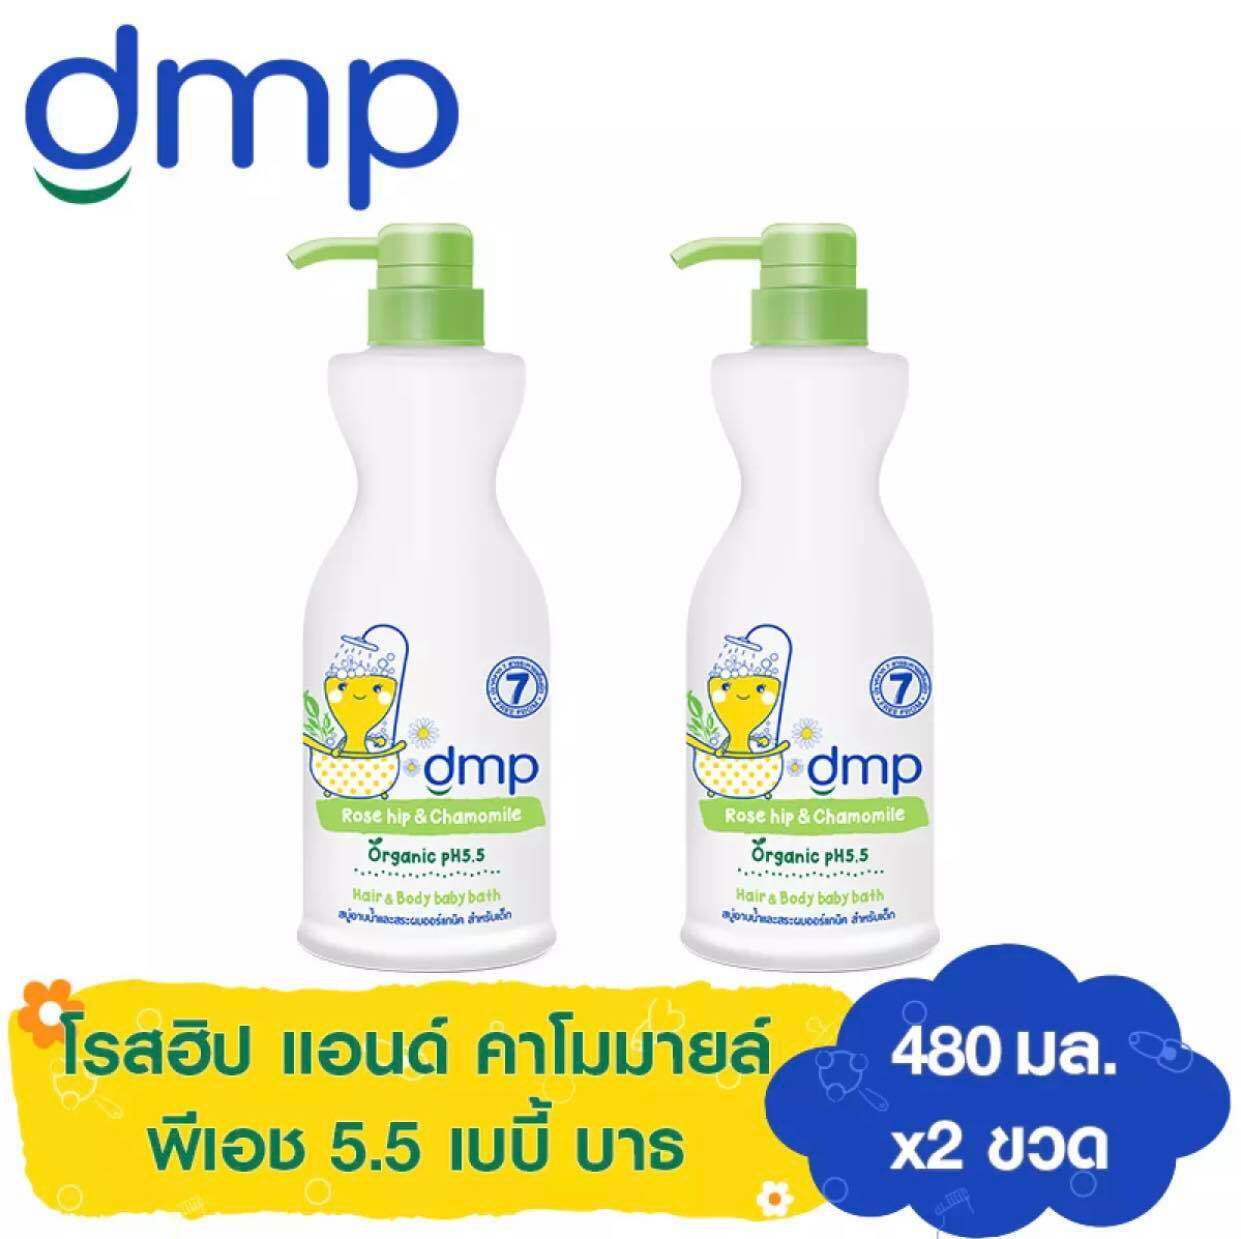 (แพ็ค 2) ดีเอ็มพี โรส ฮิป แอนด์คาโมมายล์ สบู่อาบน้ำและสระผม ออร์แกนิค พีเอช 5.5 สำหรับเด็ก ขนาด 480 มล. (รวม 2 ขวด) DMP Rosehip&Chamomile Organic PH 5.5 Hair&Body